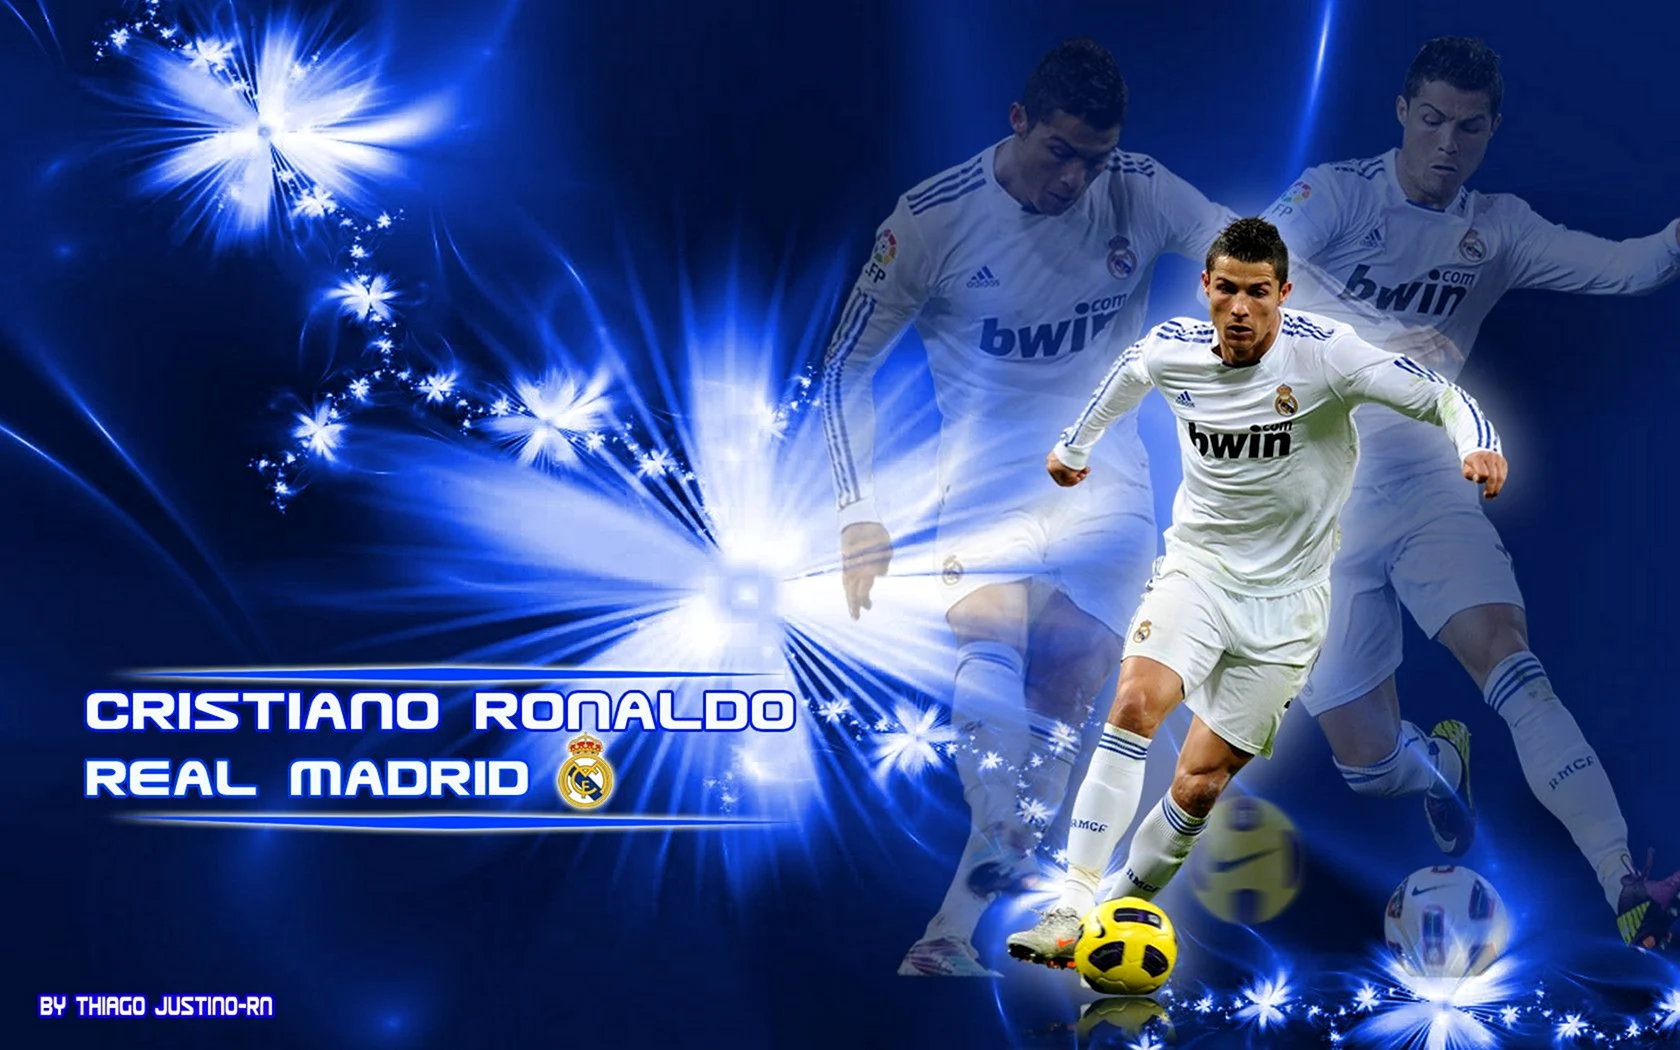 Cristiano Ronaldo real Madrid 2014 обои